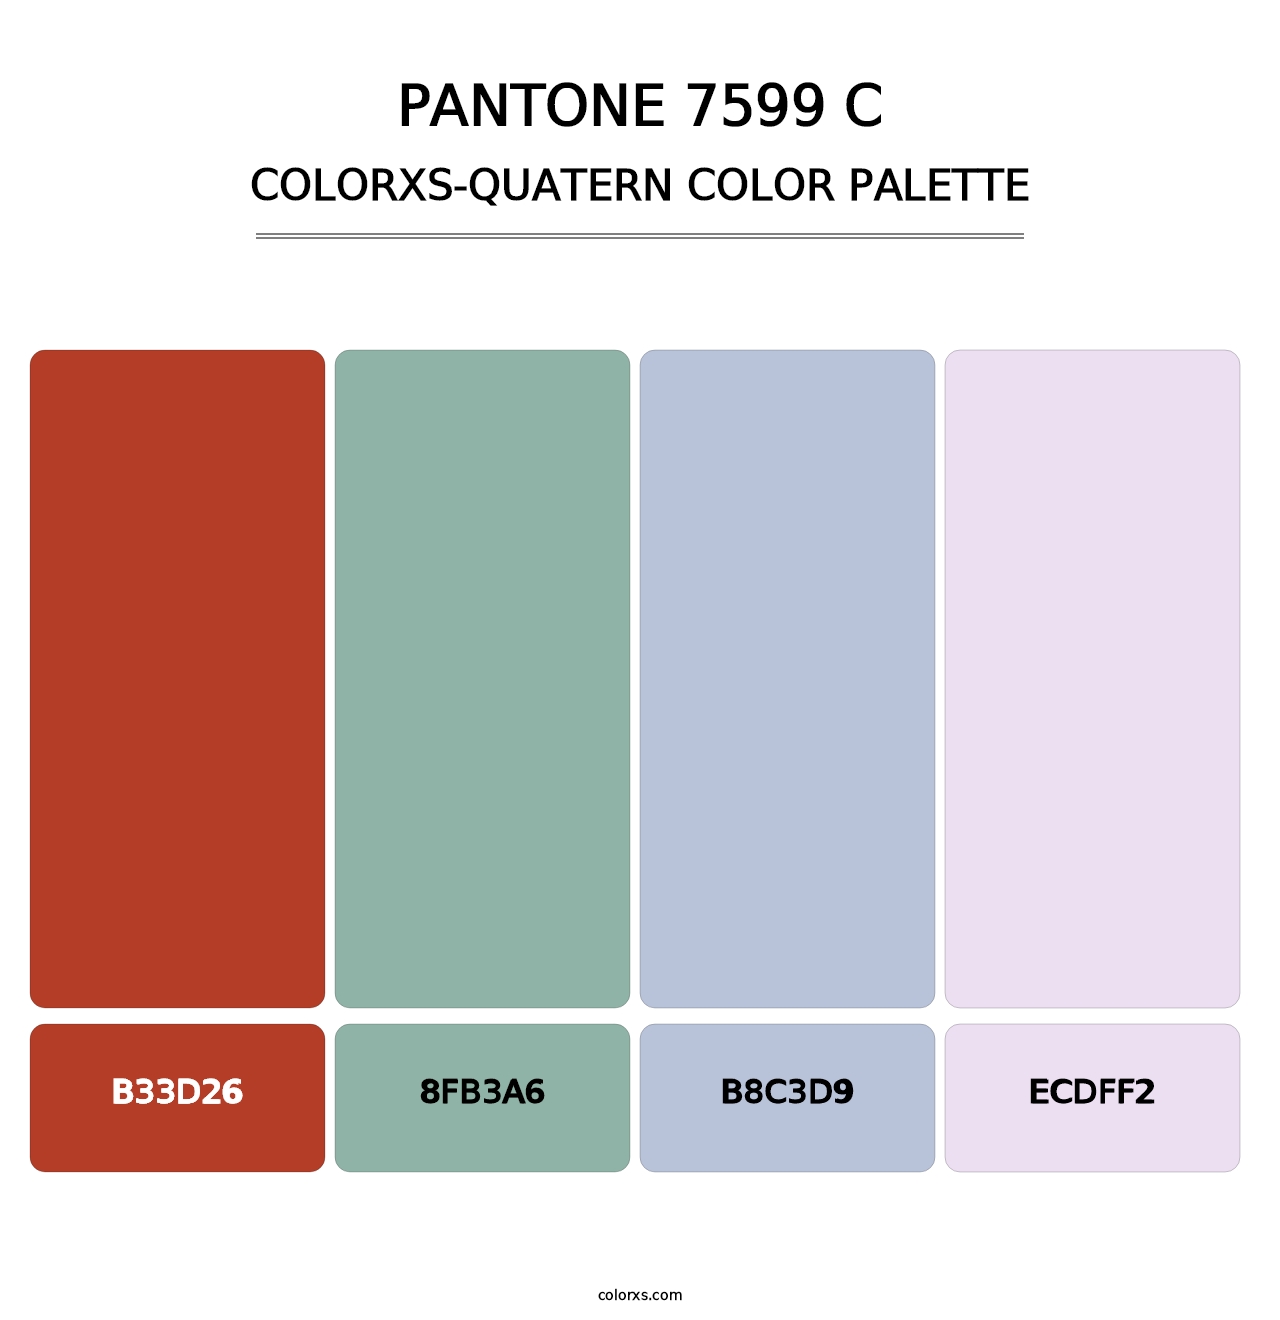 PANTONE 7599 C - Colorxs Quatern Palette